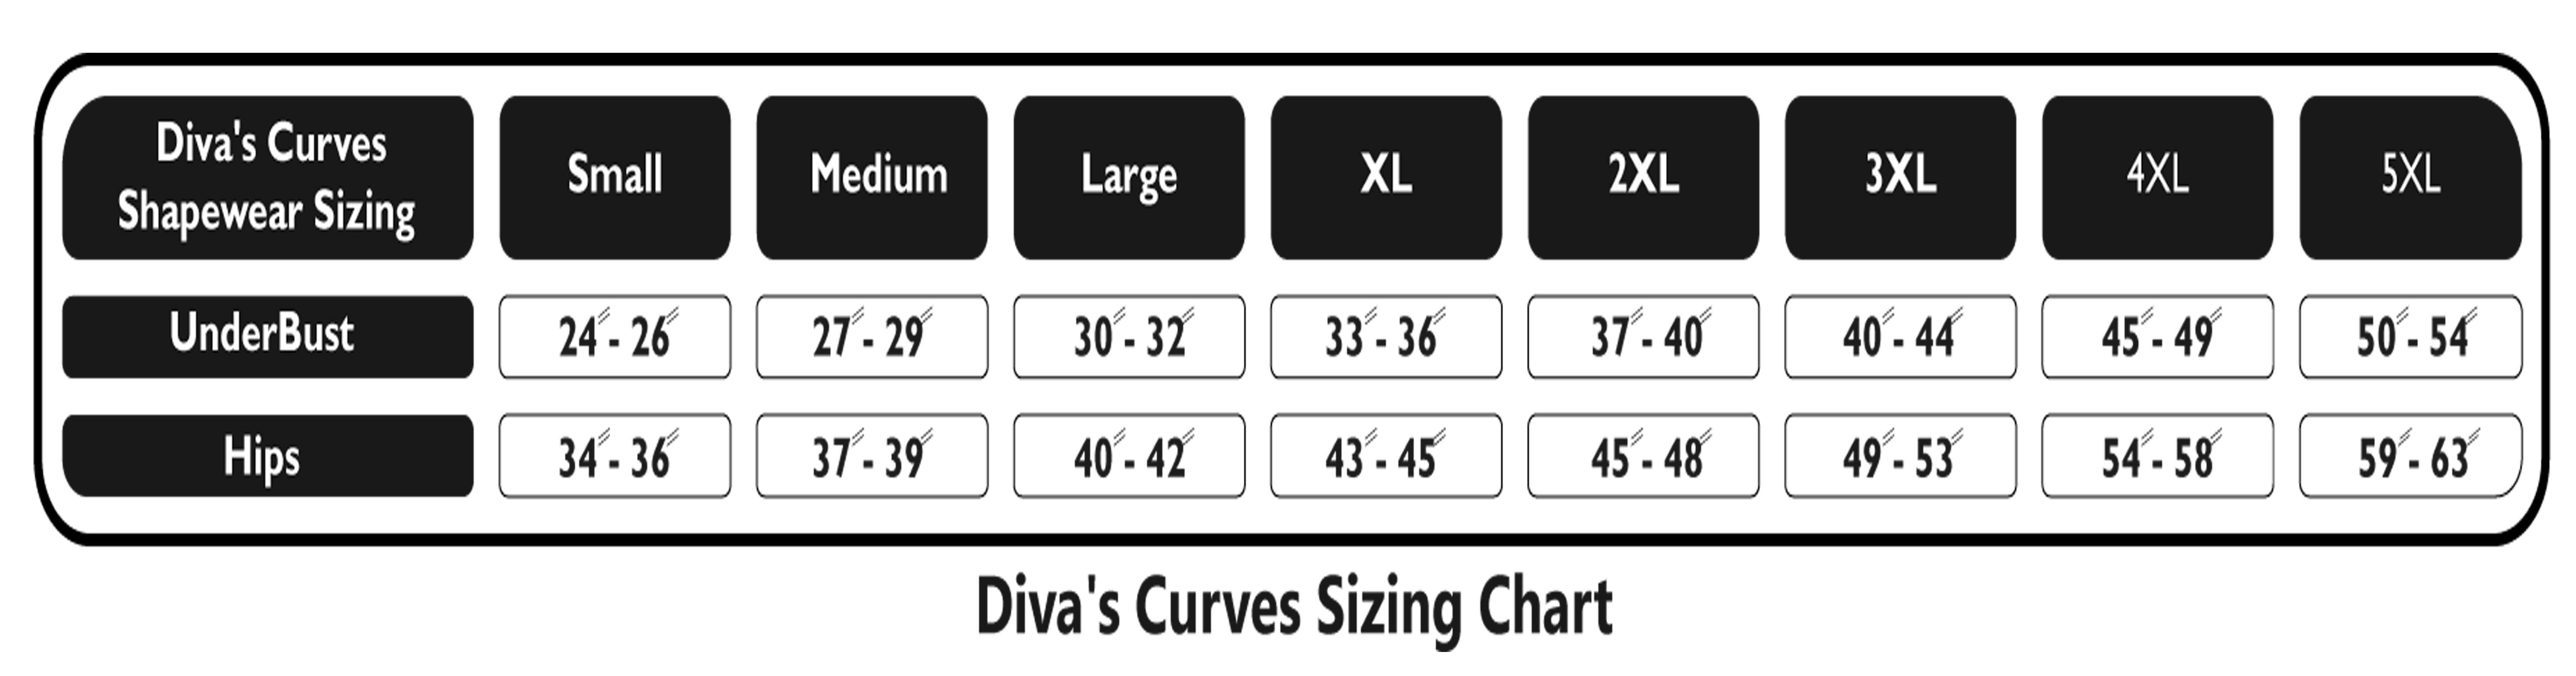 Yummie Shapewear Size Chart